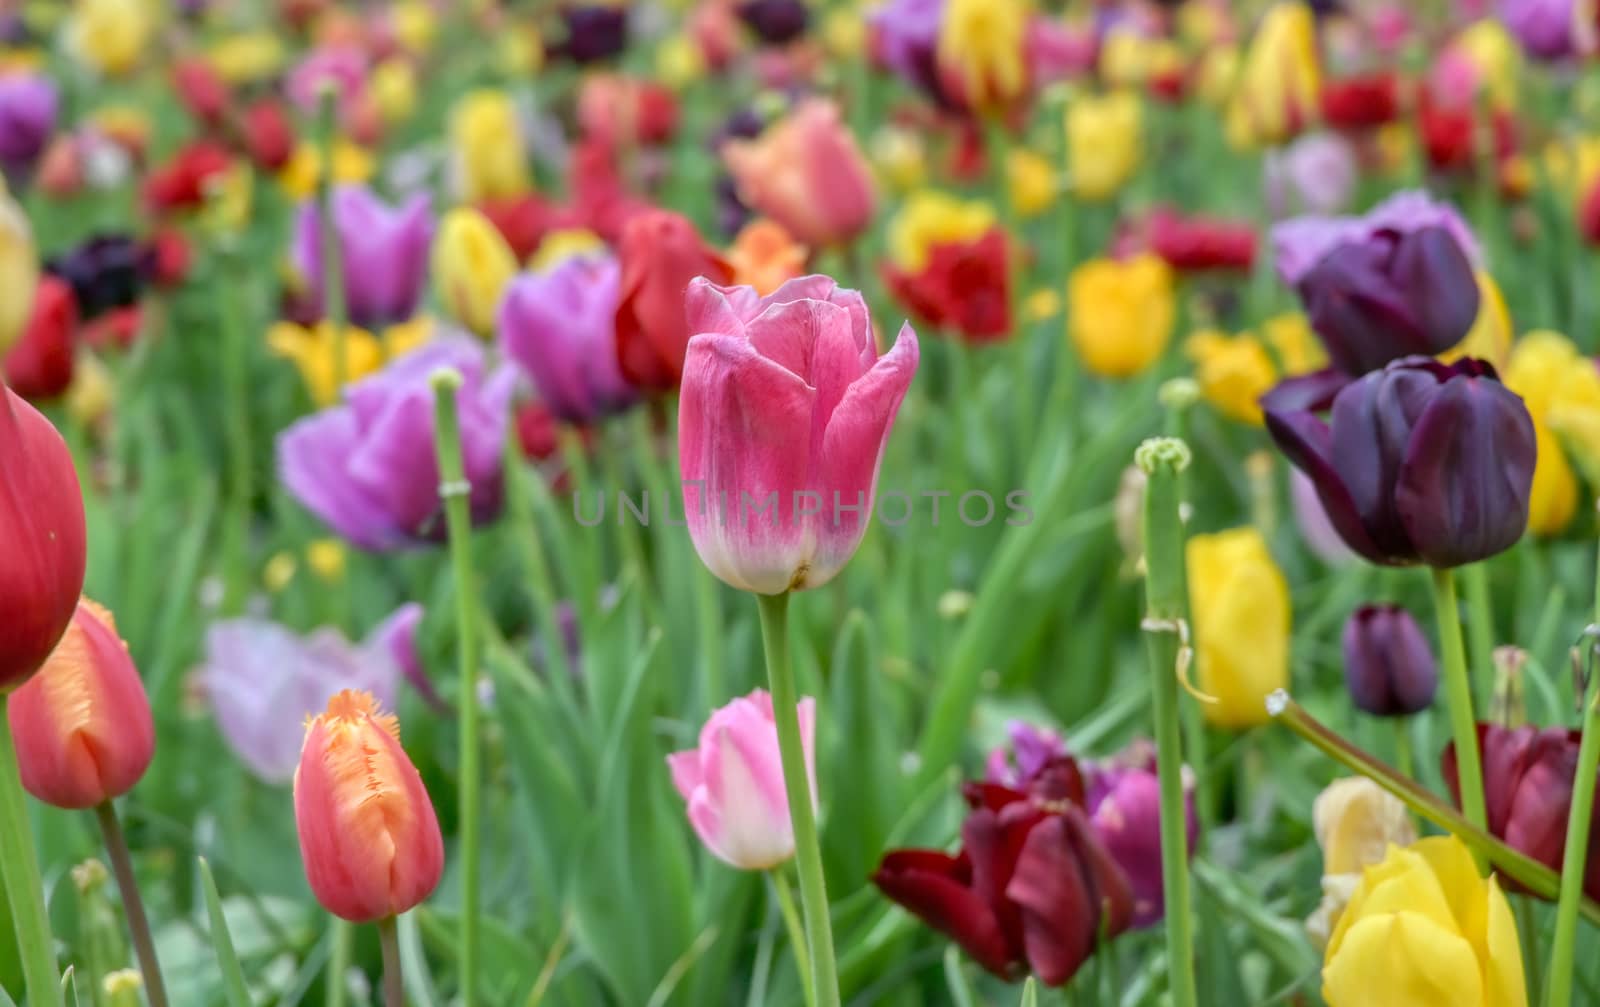 Tulips in Holland by jbyard22